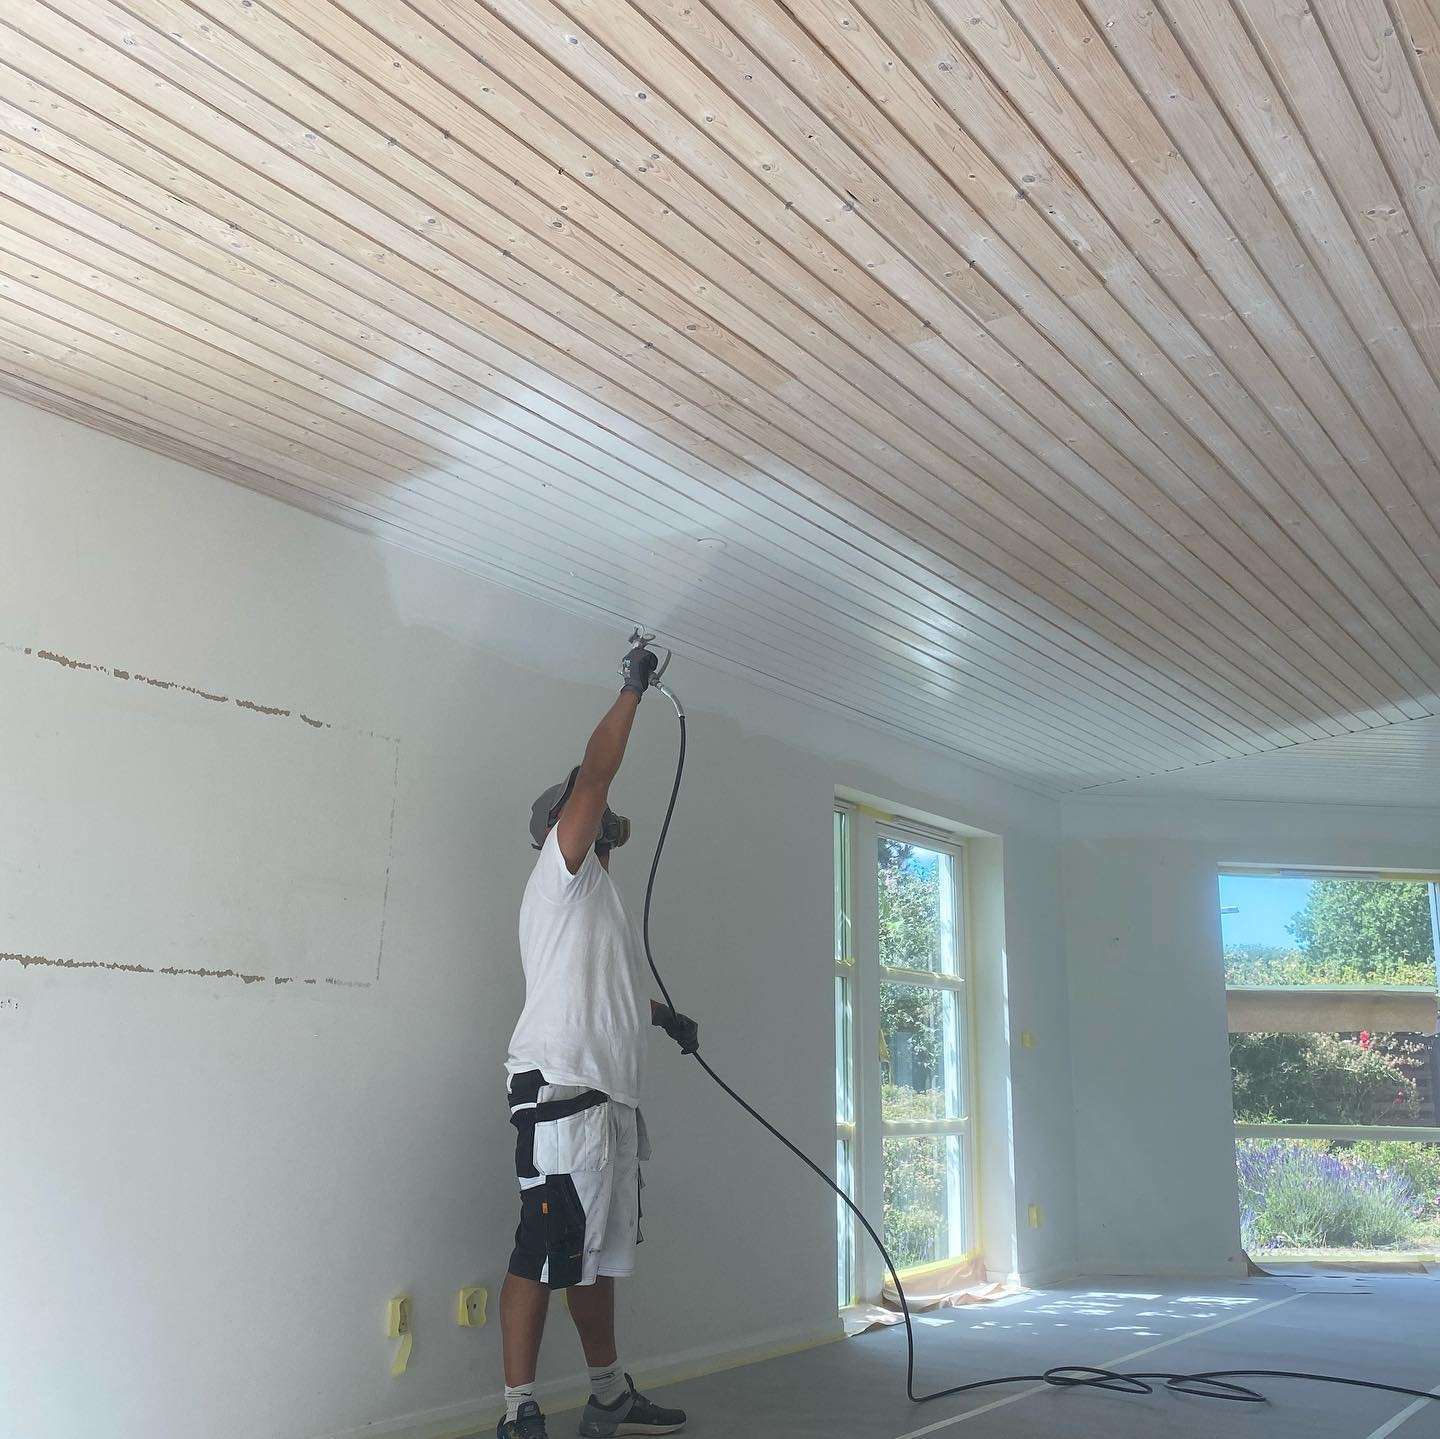 Maler hos Borregaards Malerfirma i gang med at spraymale et træloft